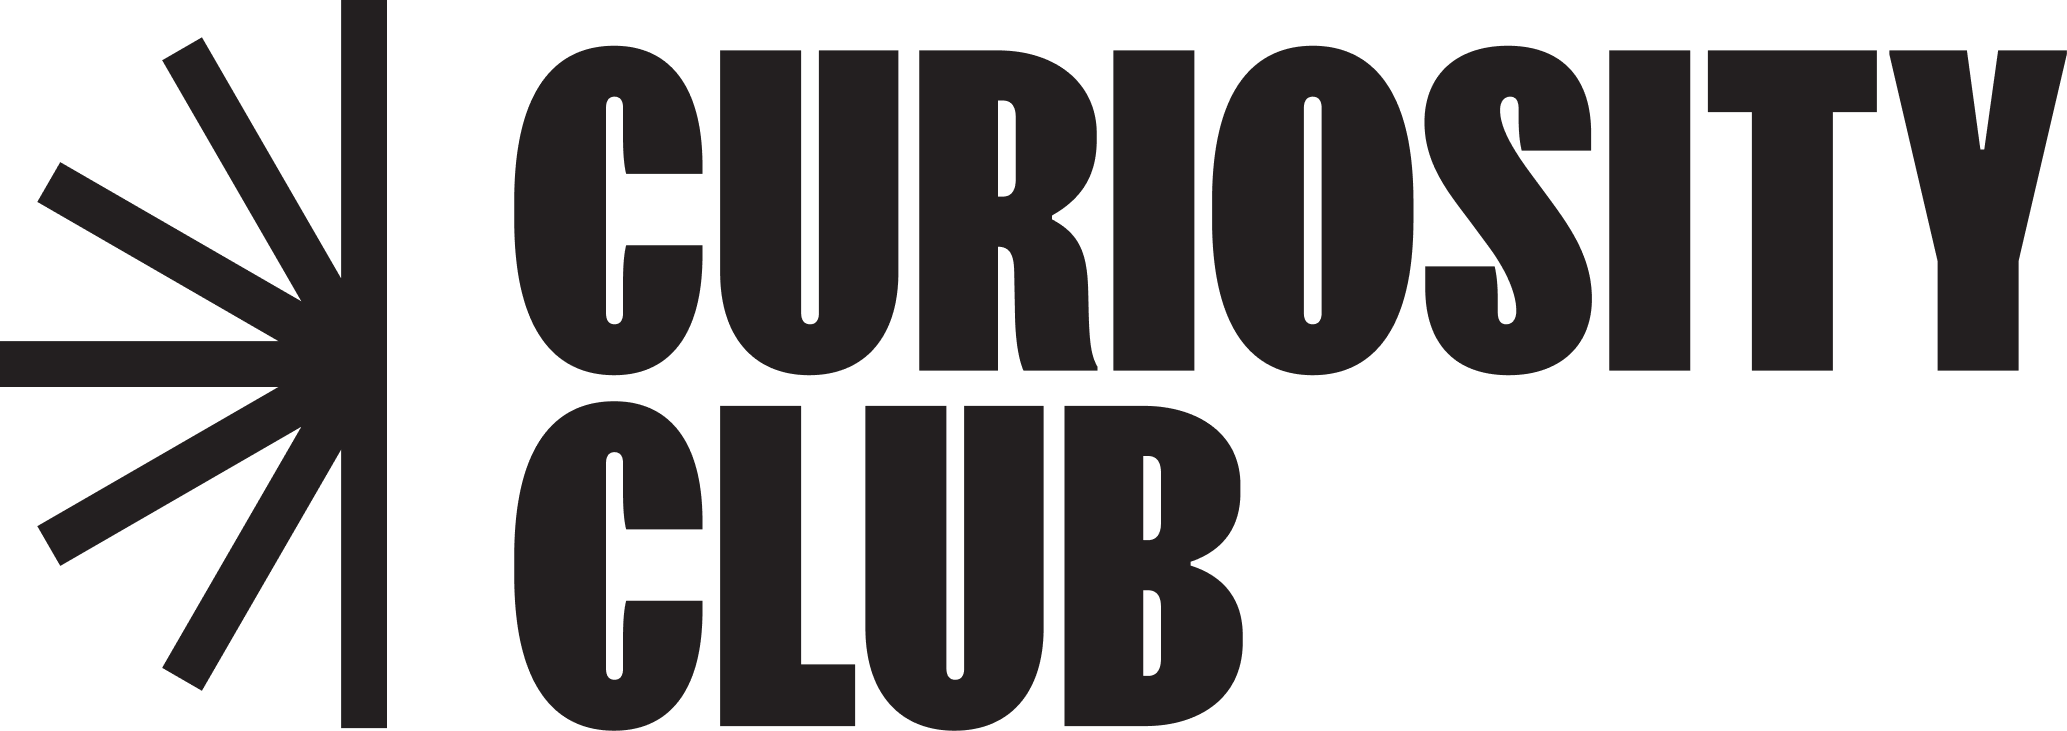 logo-curiosity-club.png